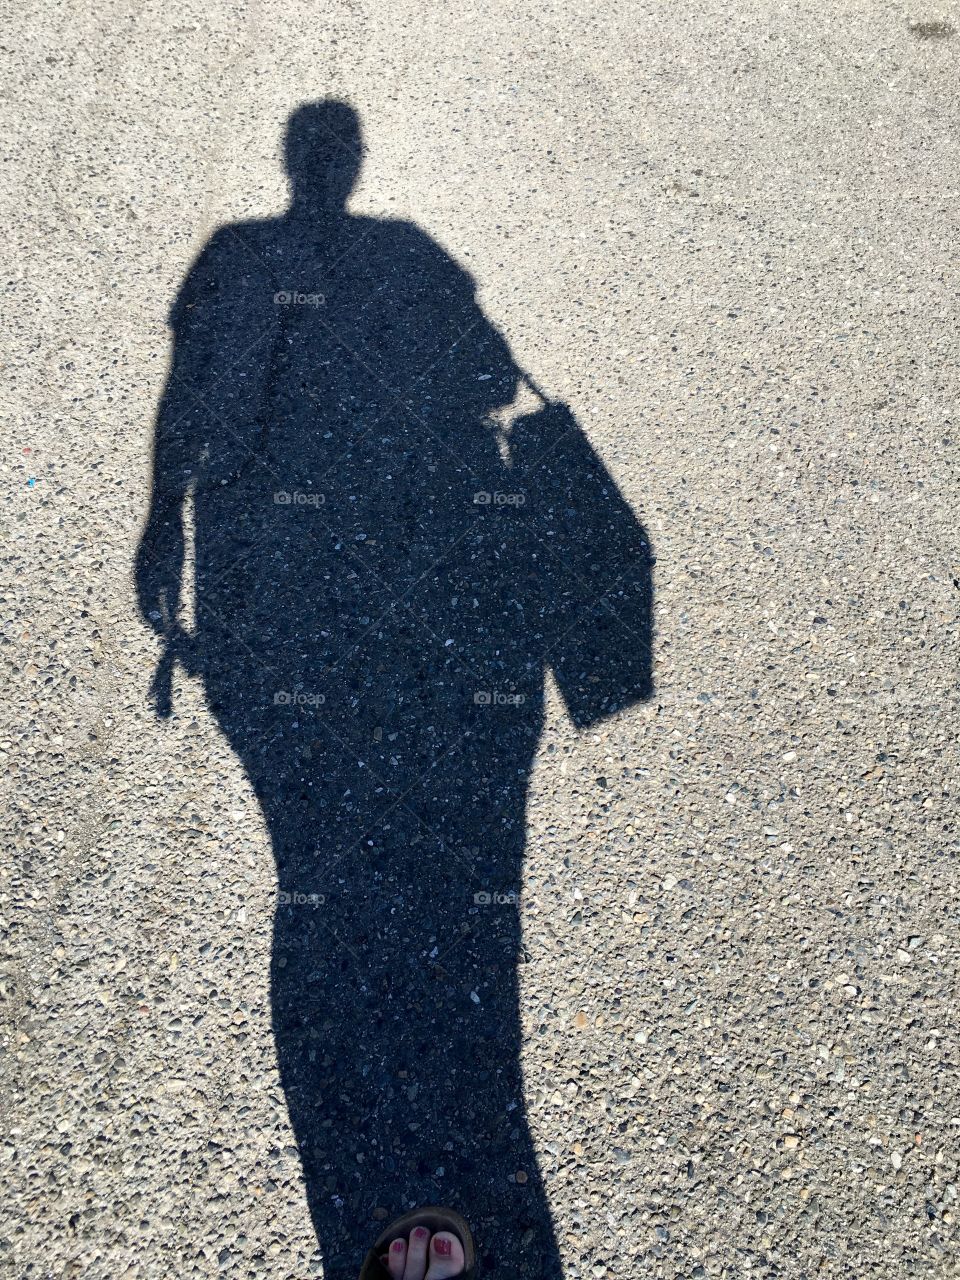 Walking, shadow ahead 